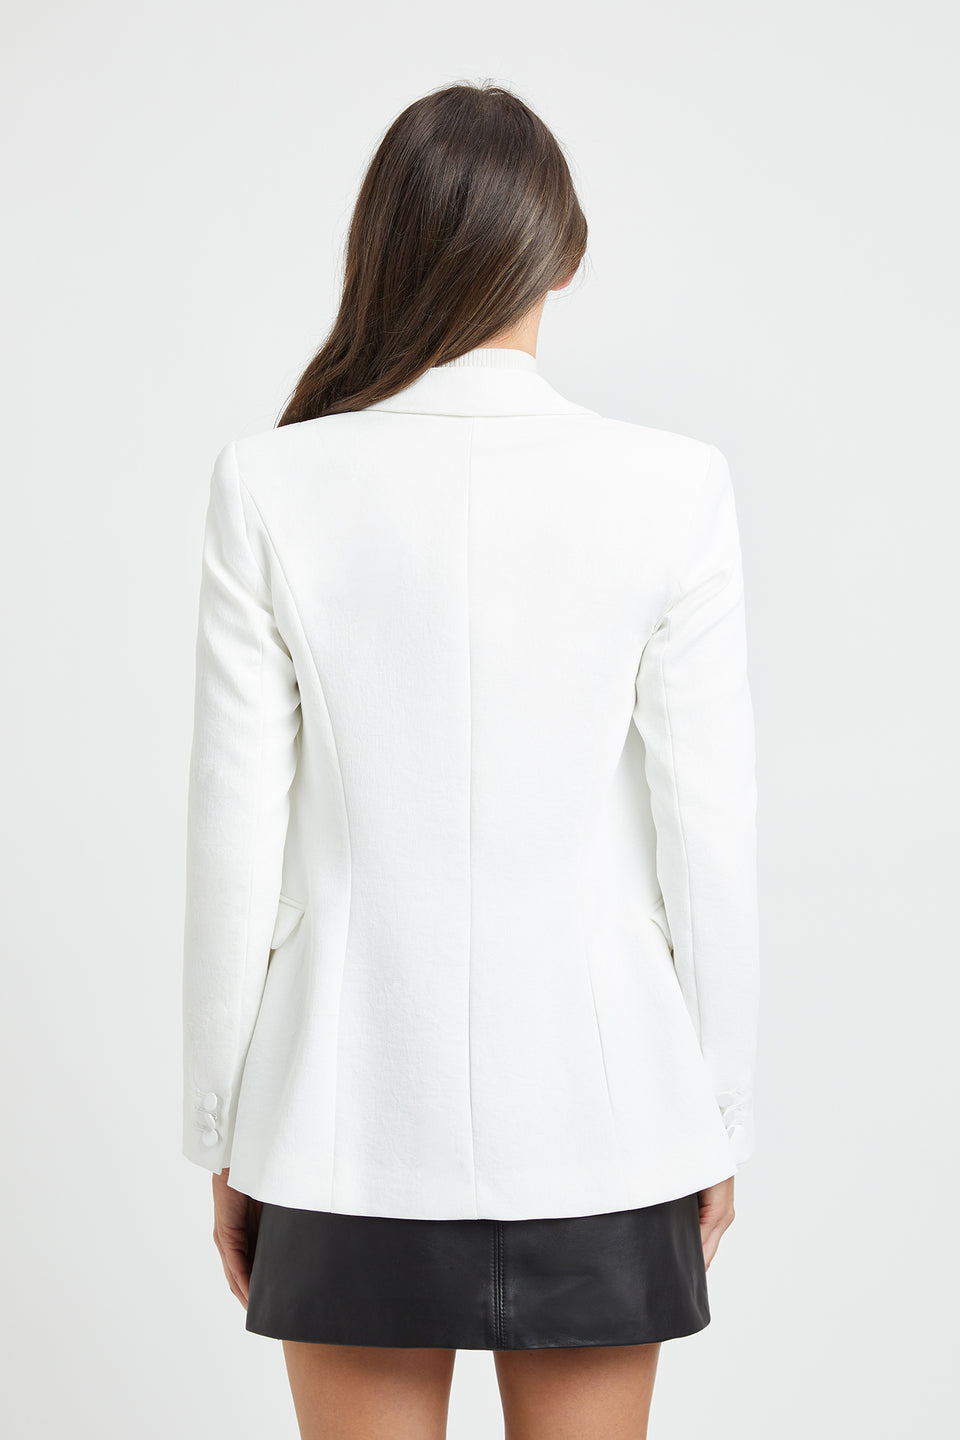 Buy Women's Blazer Jackets Online in Australia | KOOKAÏ – KOOKAÏ Australia